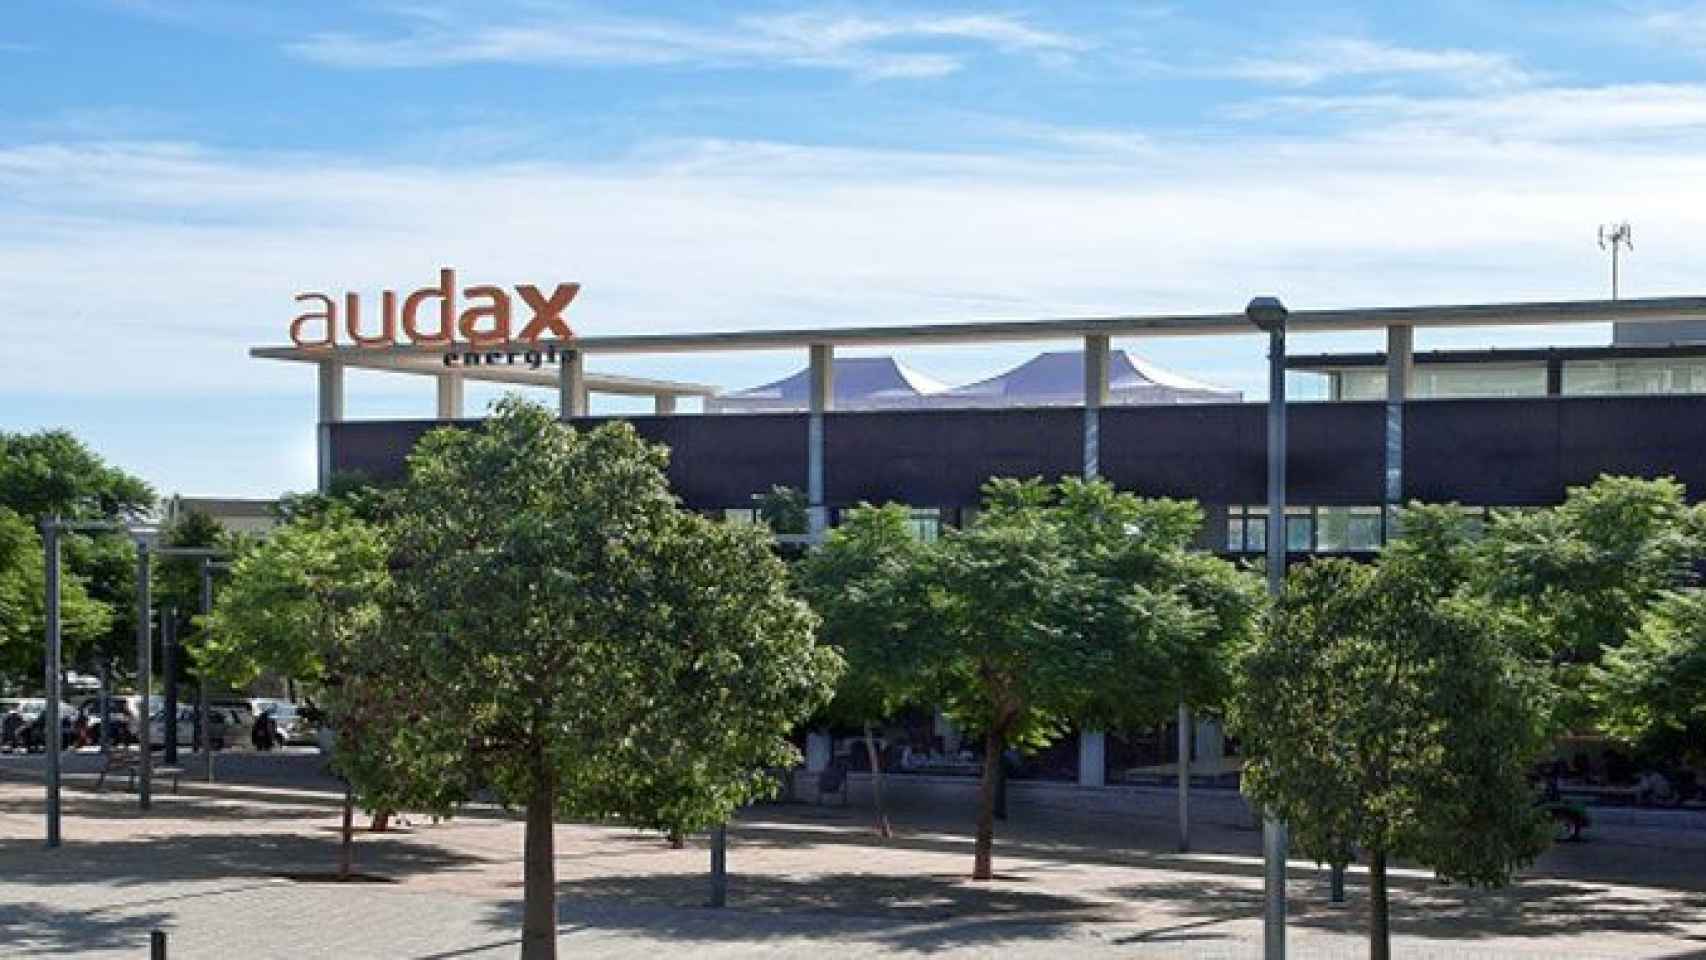 La sede de la energética Audax en Badalona / CG